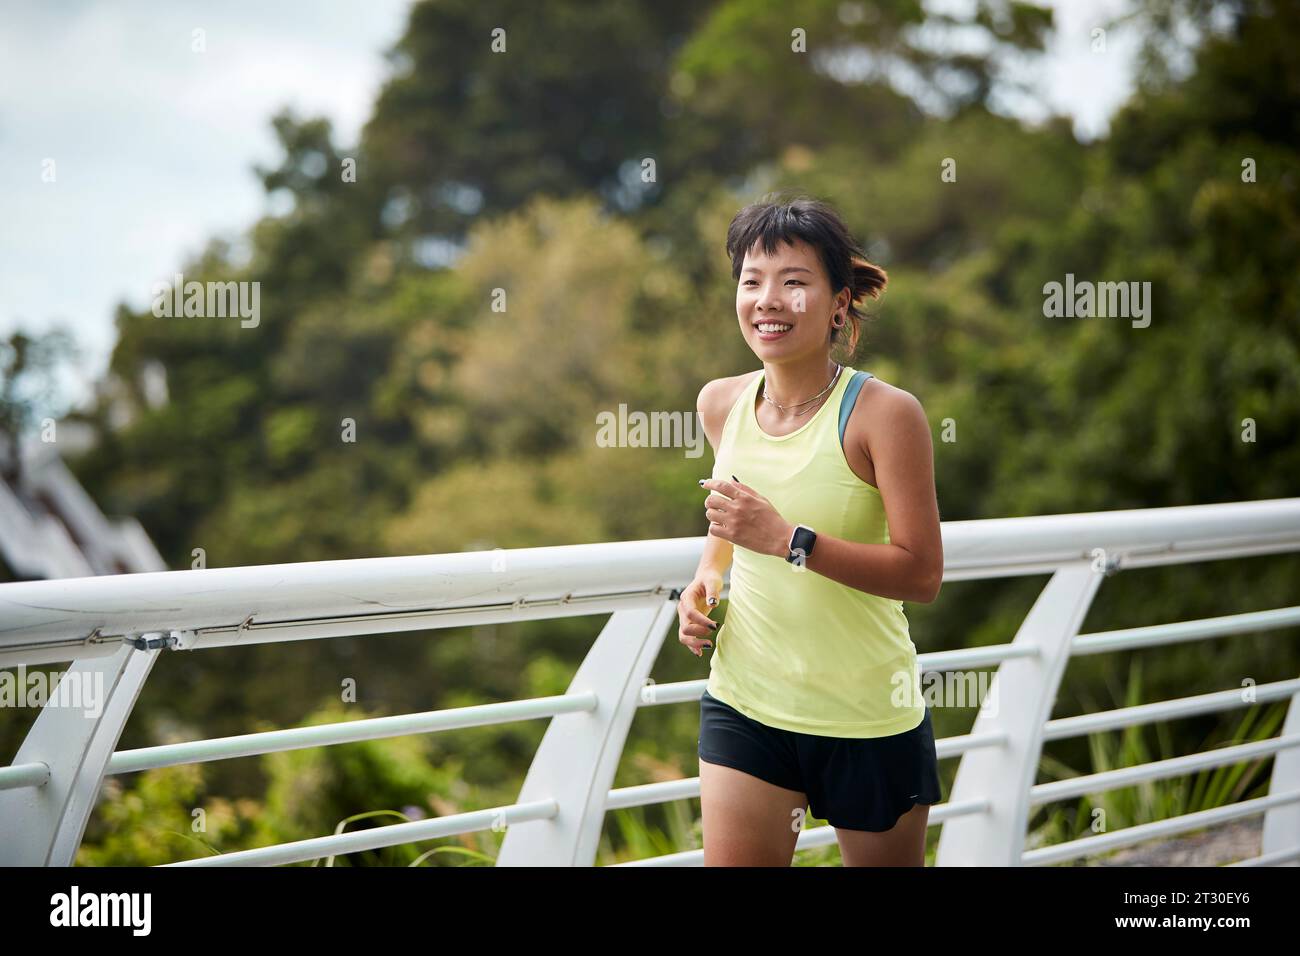 Junge asiatische Frau, die im Stadtpark Joggen läuft Stockfoto